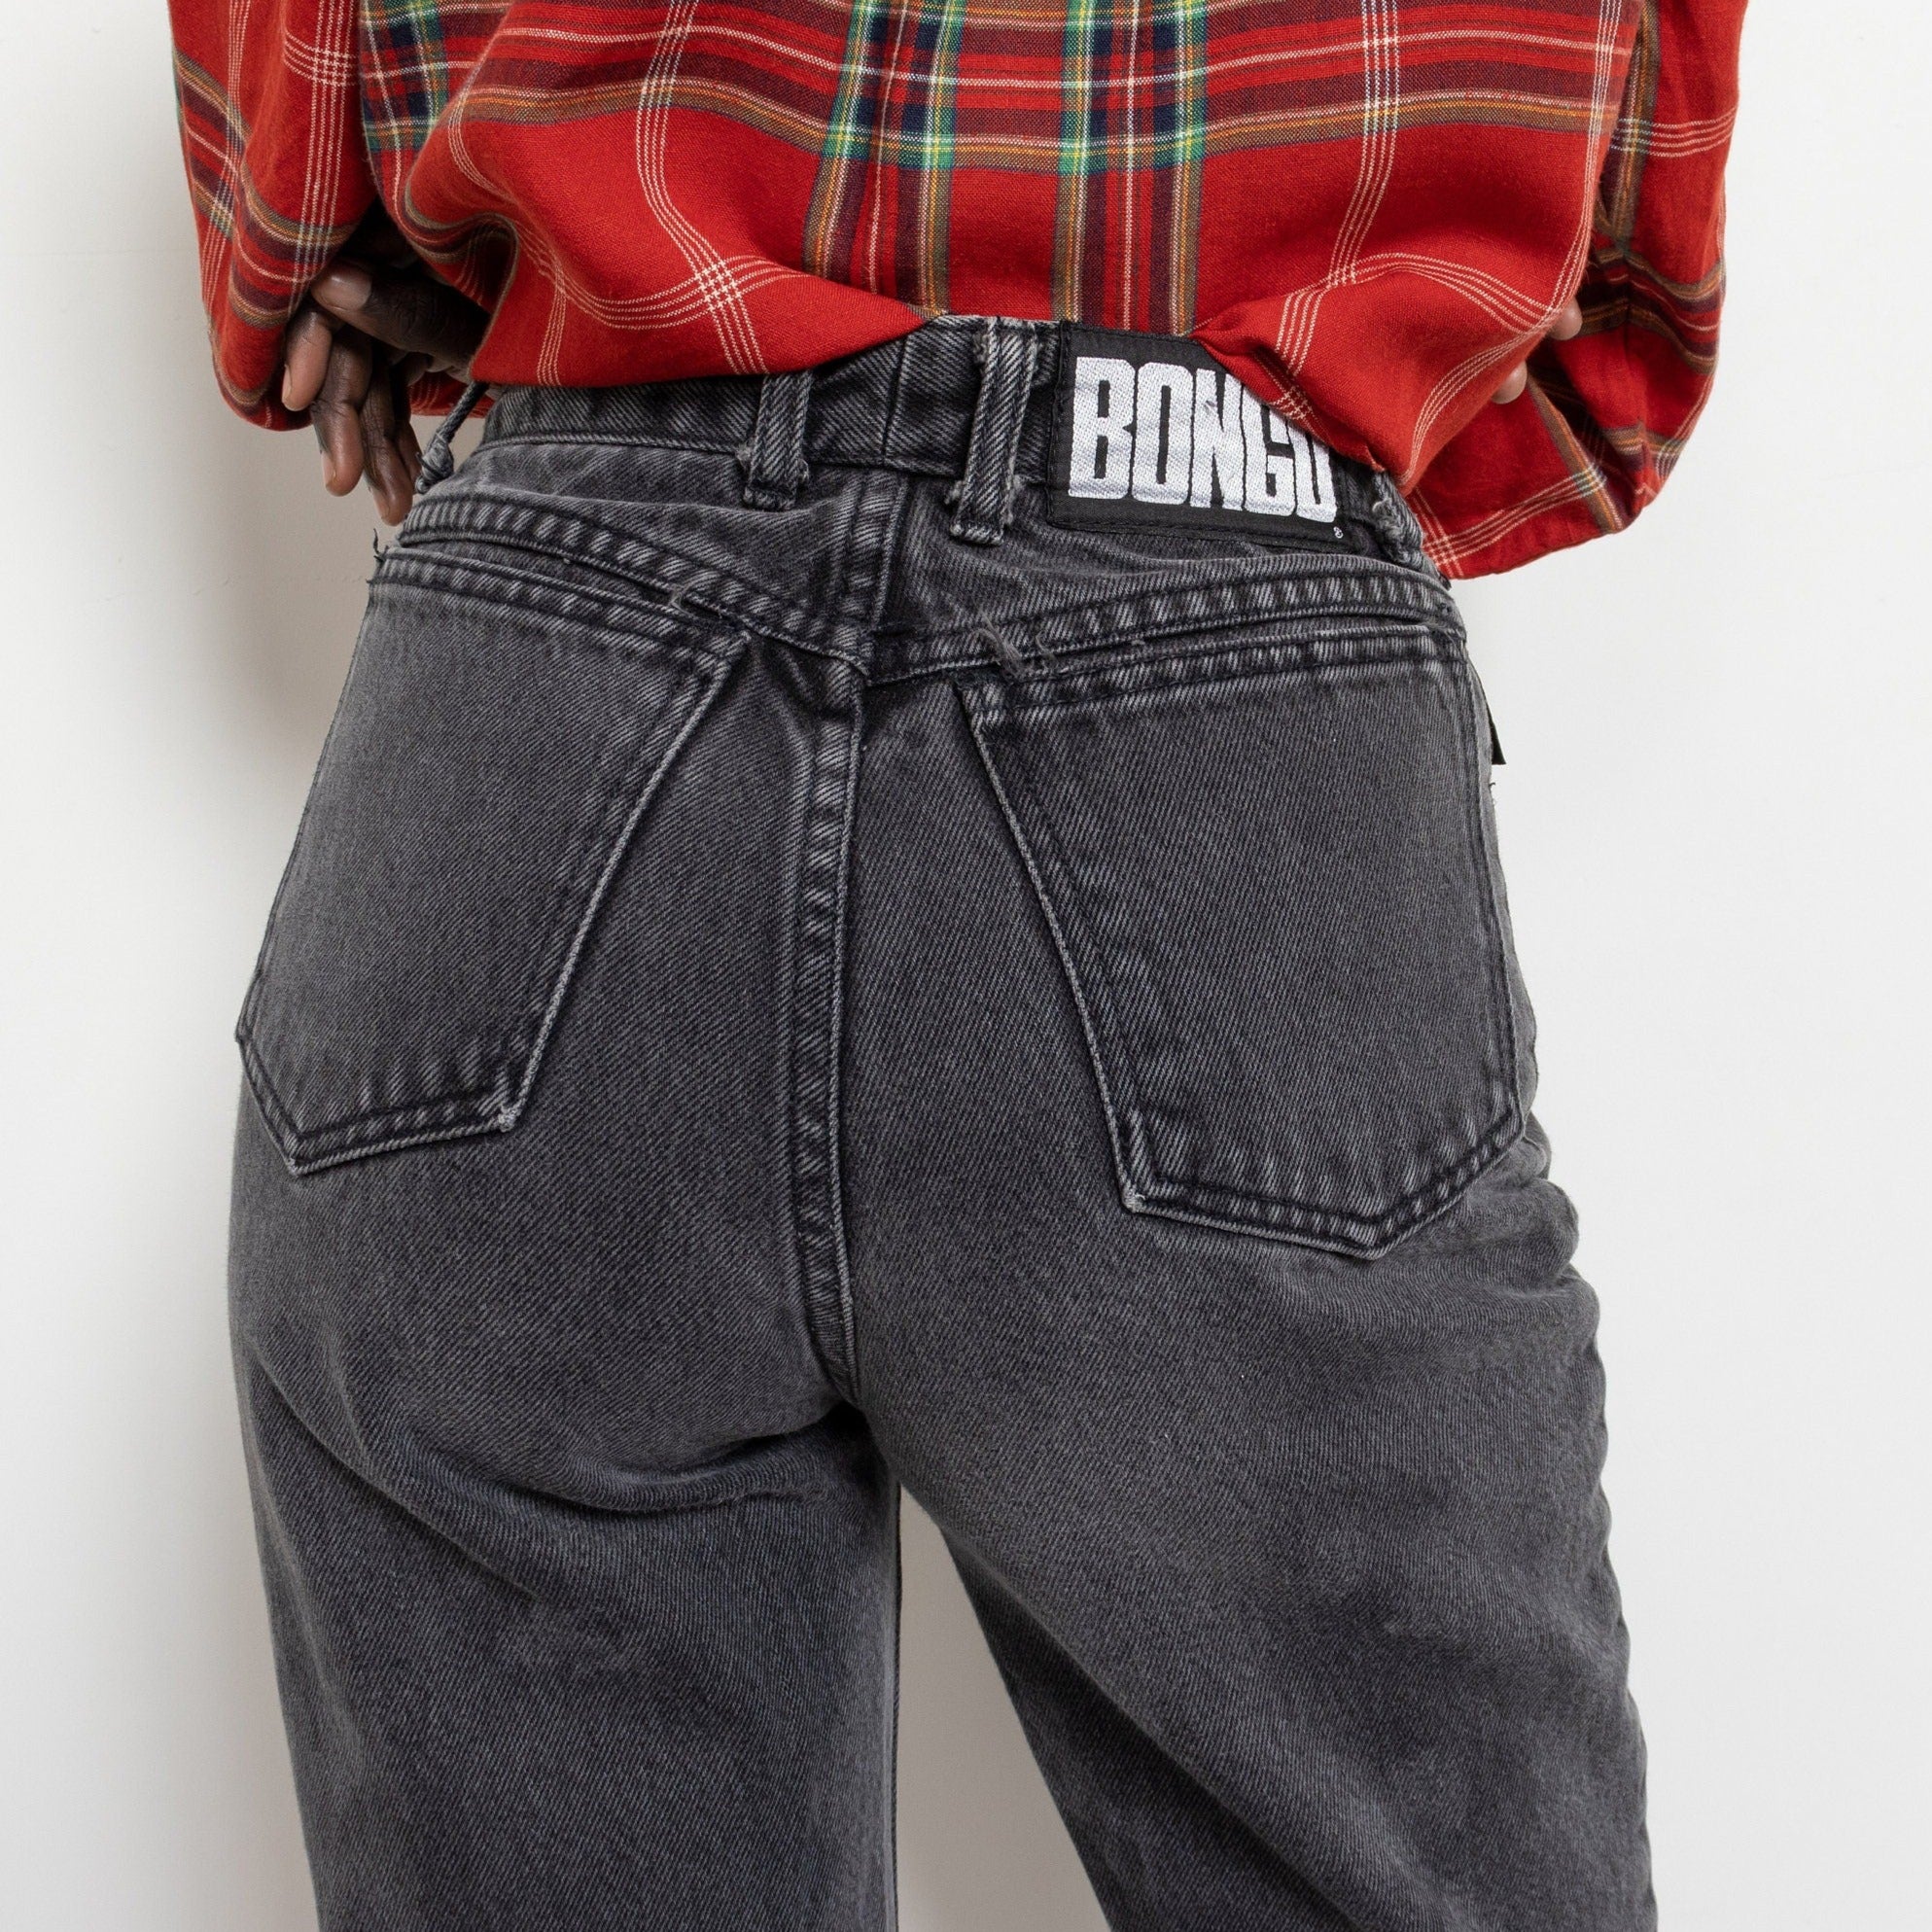 Bongo Jeans